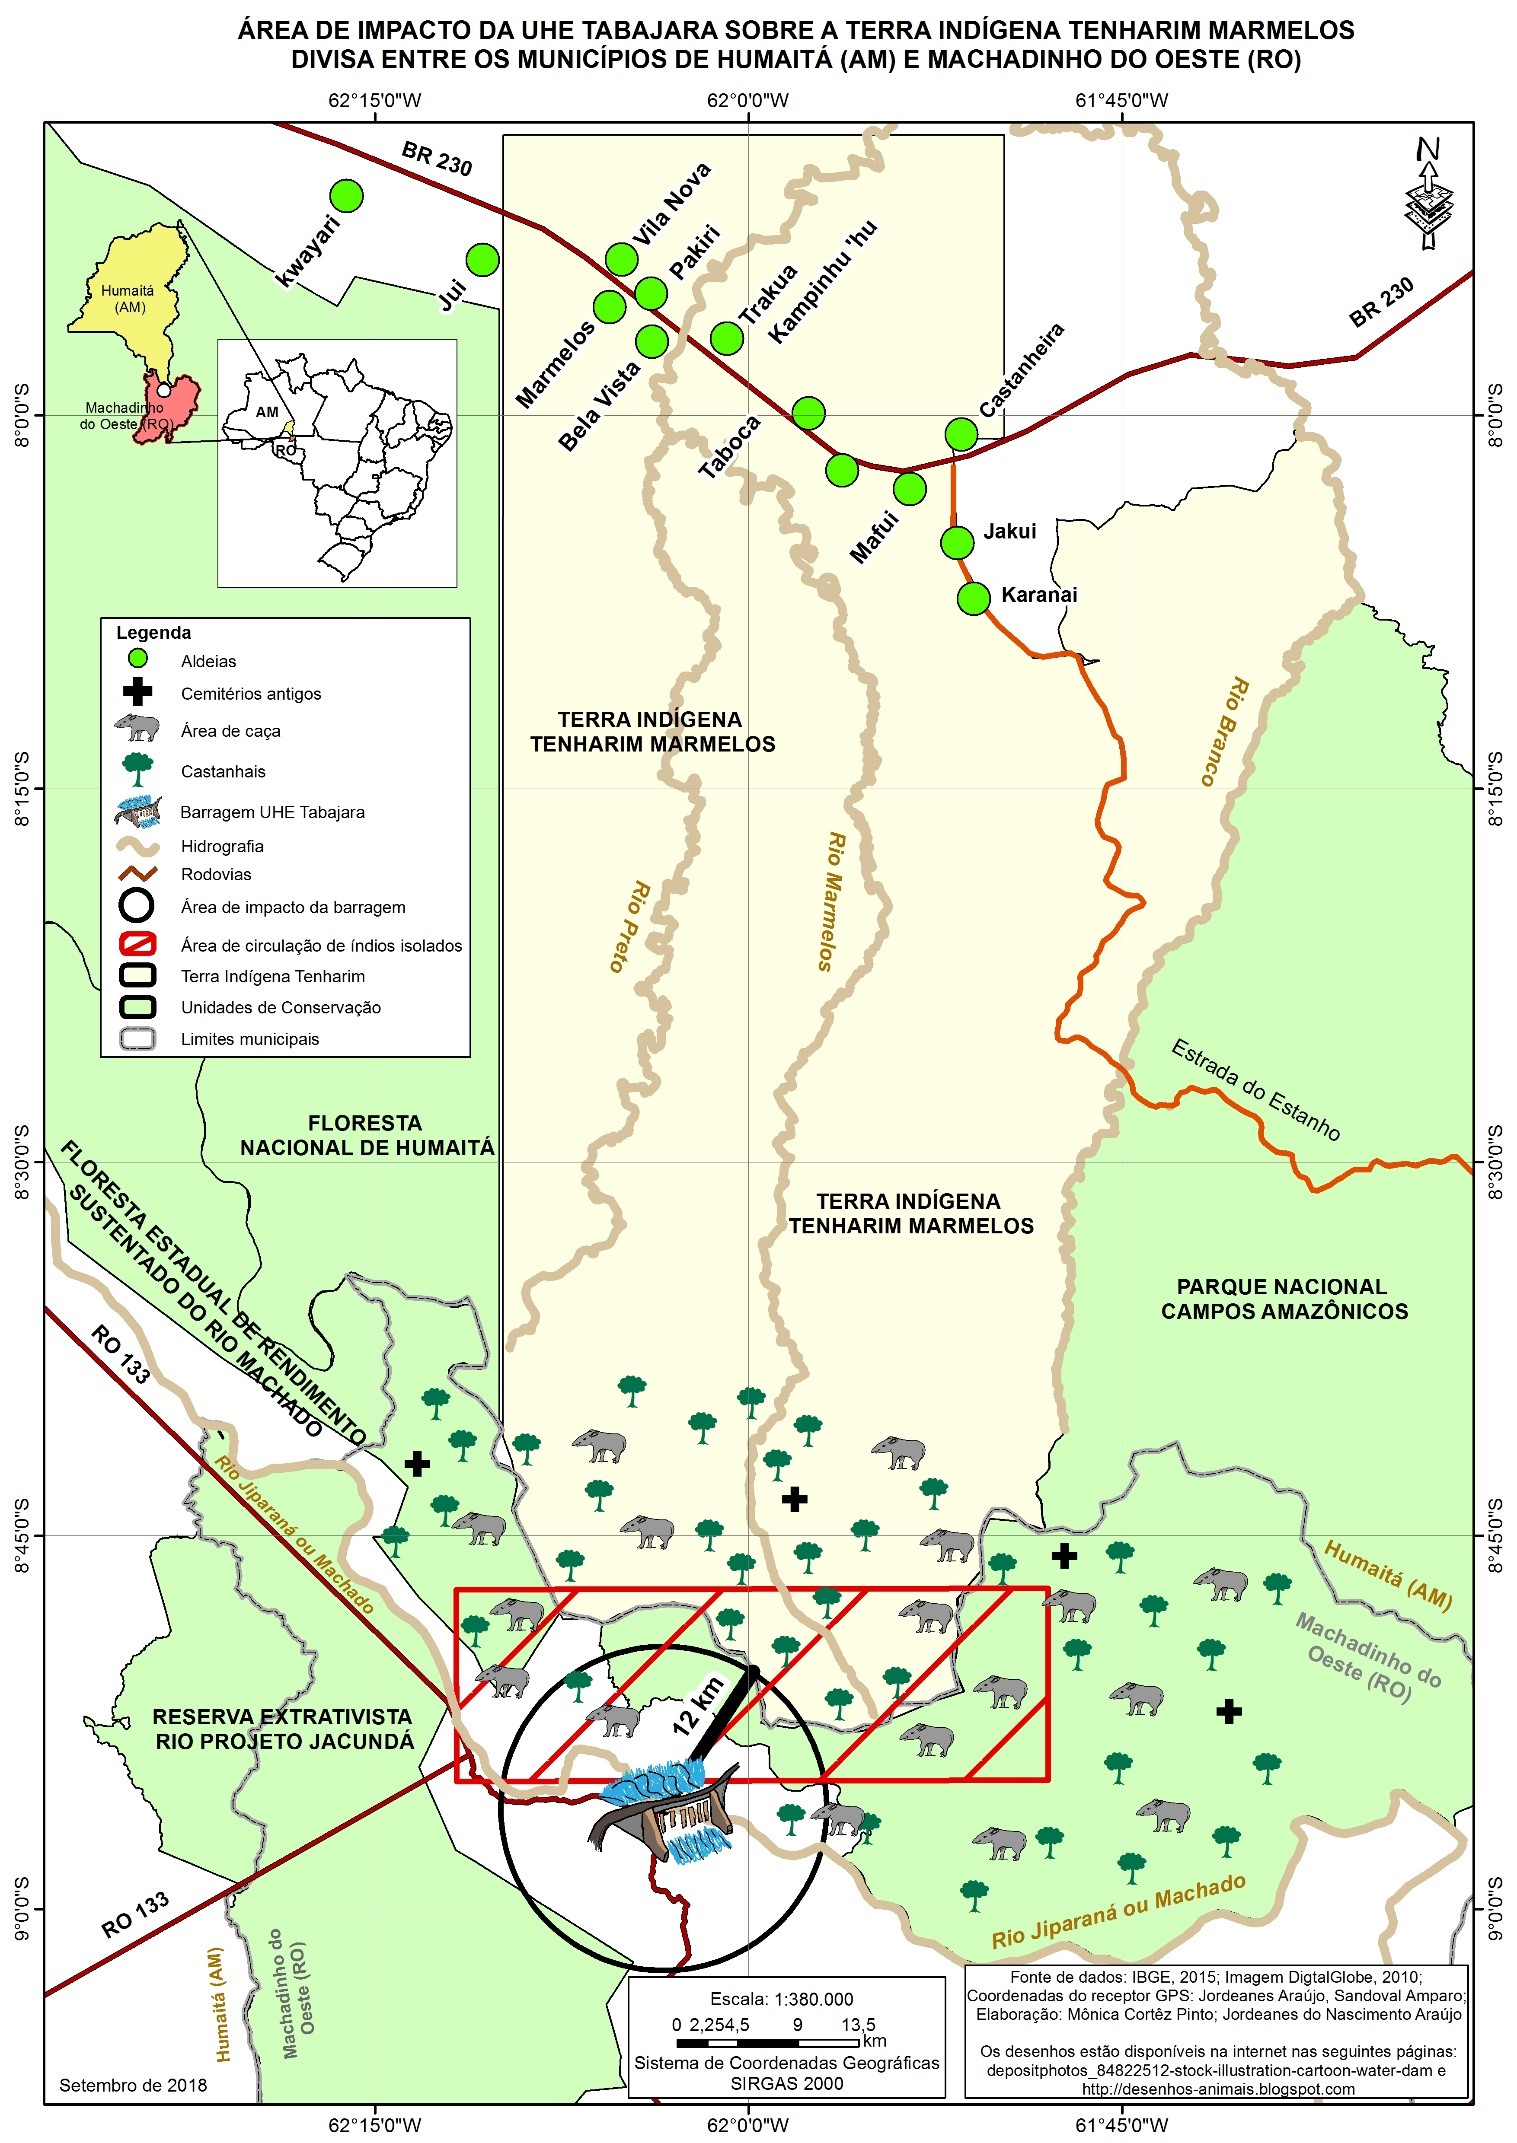 Área de impacto da UHE Tabajara sobre a terra
indígena Tenharin Marmelos – Divisa entre os municípios de Humaitá (AM) e Machadino do Oeste (RO)